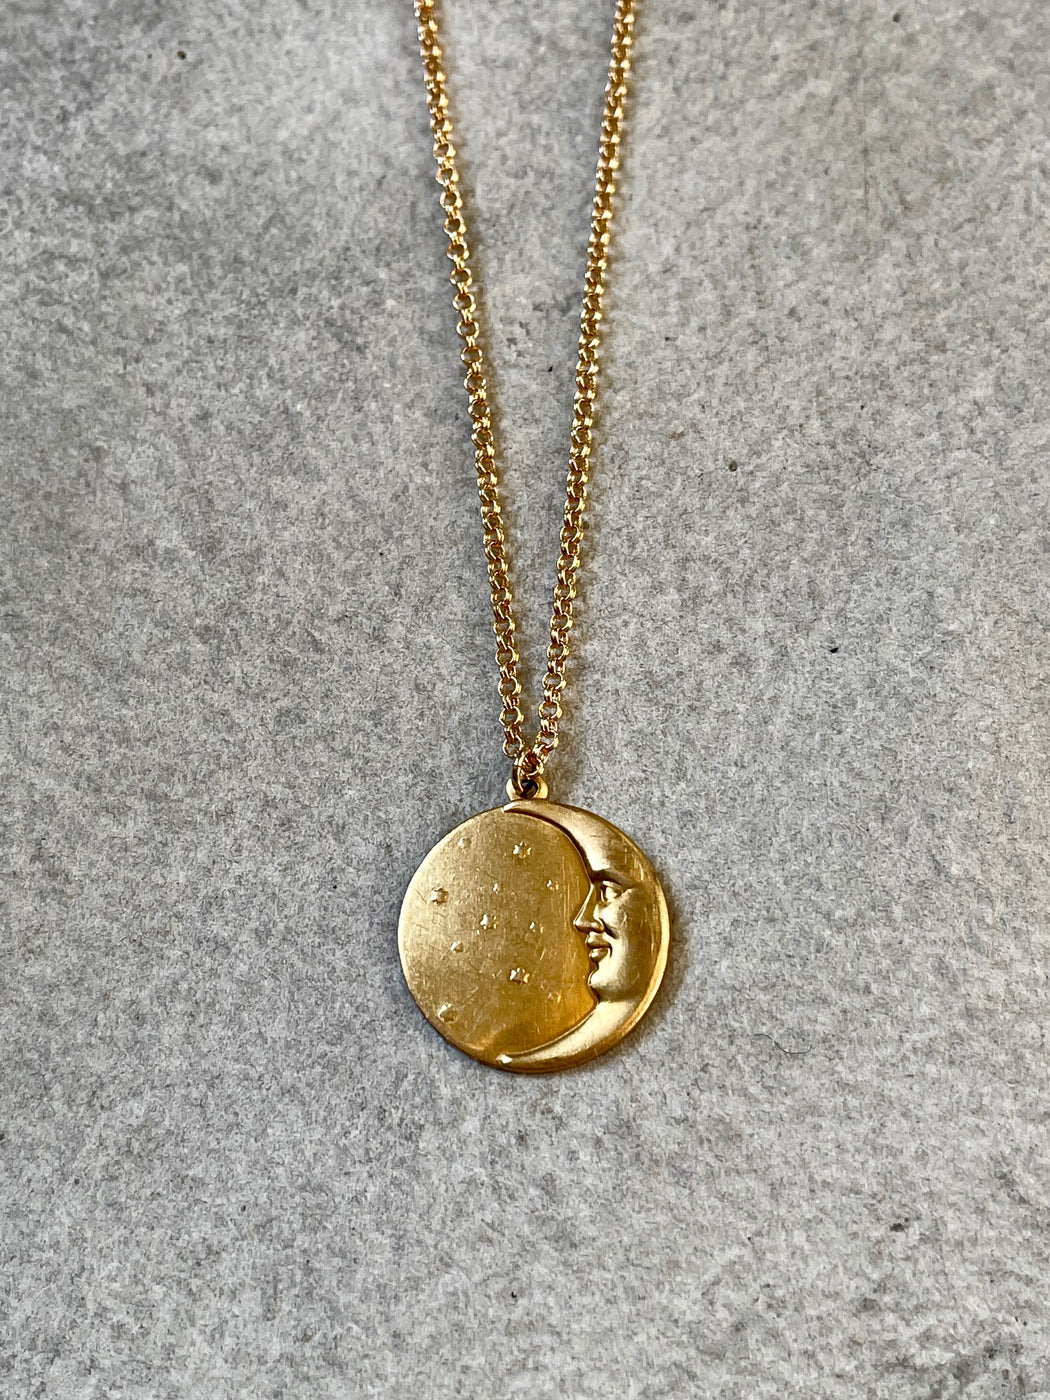 "Golden Moon" Pendant by Collarbone